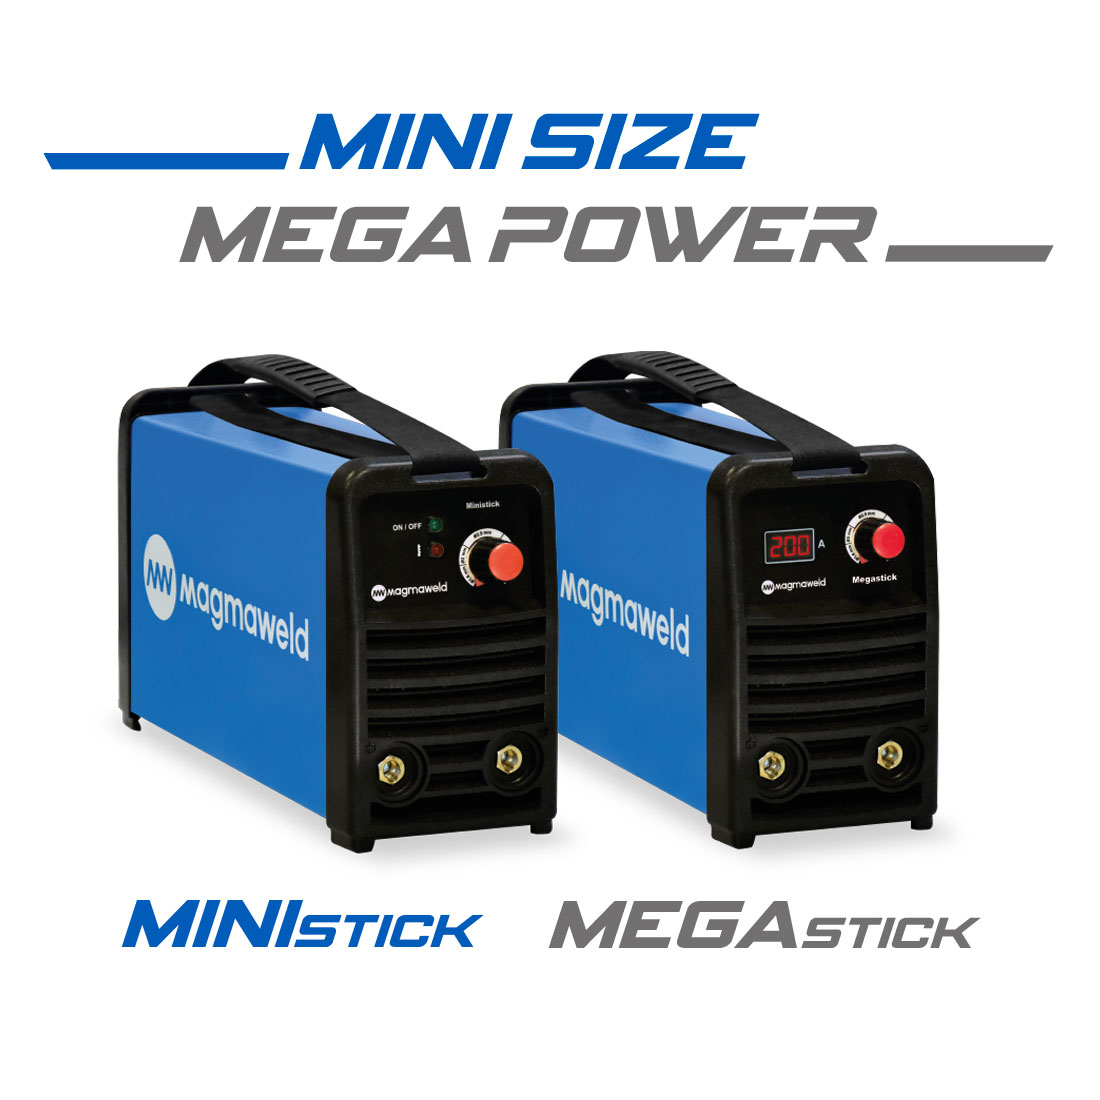 Mini Size Mega Power